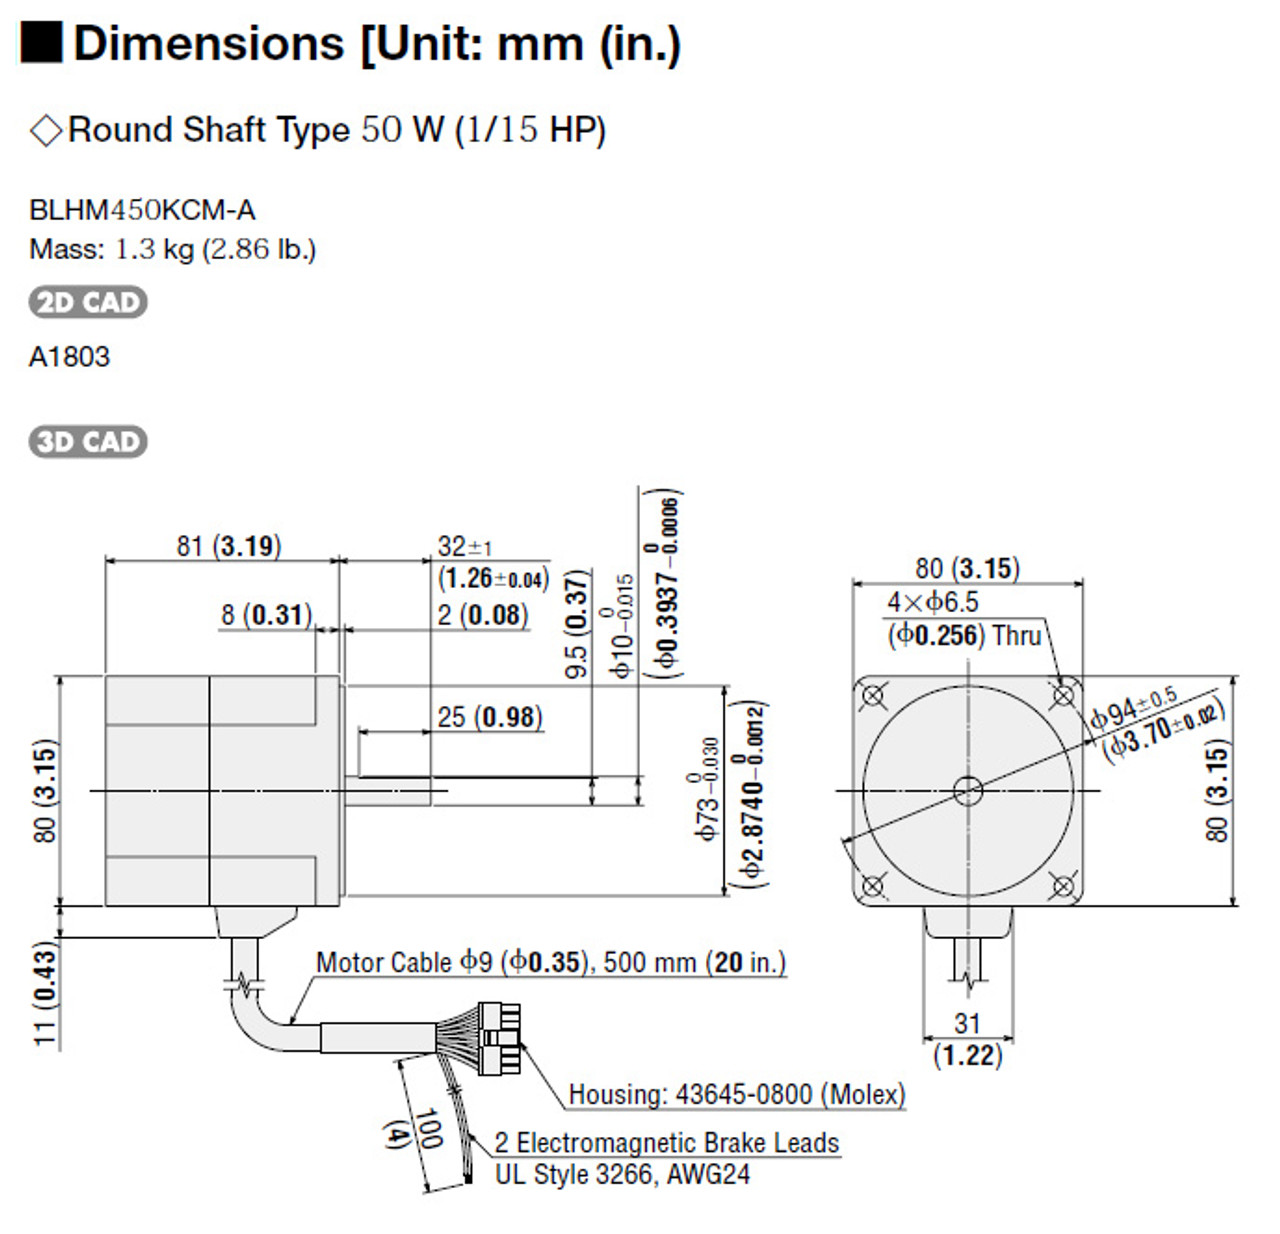 BLHM450KCM-A - Dimensions